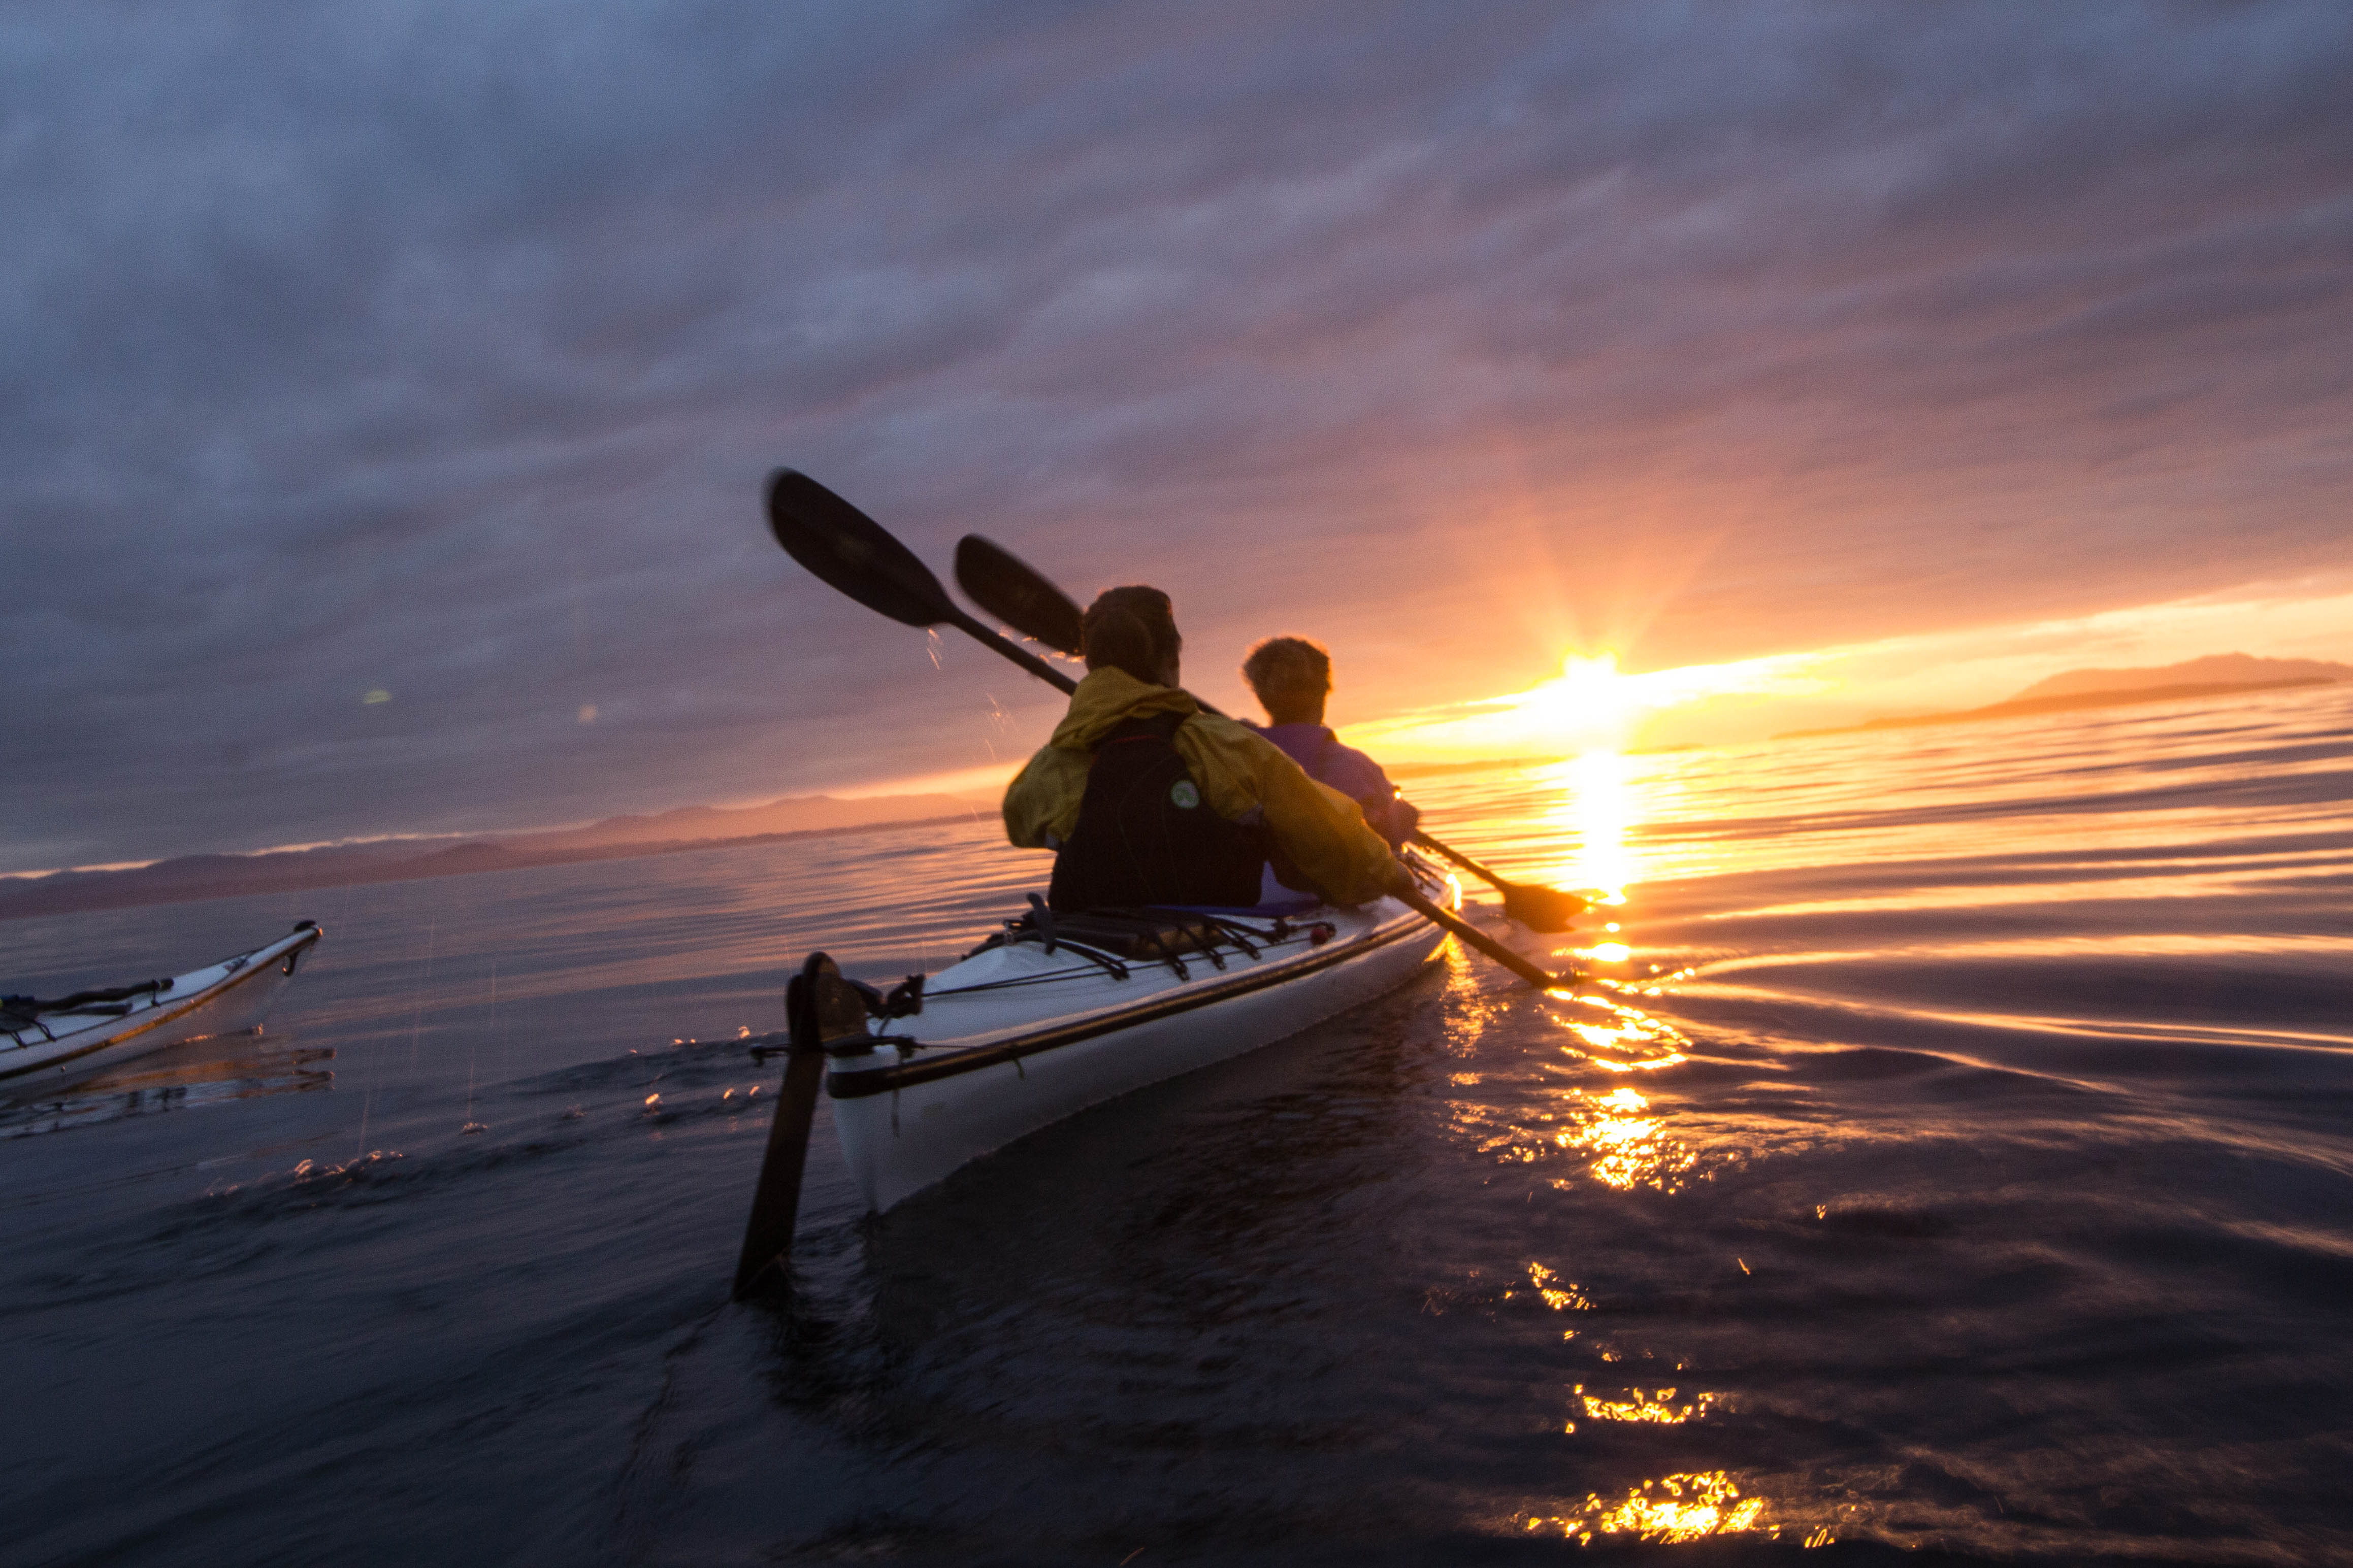 kayaking evening trip